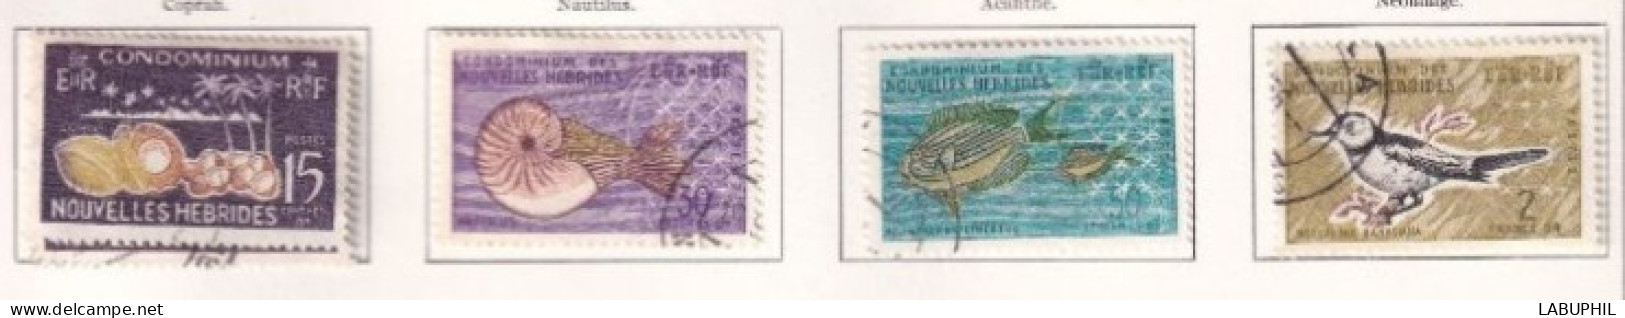 NOUVELLES HEBRIDES Dispersion D'une Collection Oblitéré Et Mlh  1963 Faune - Gebraucht